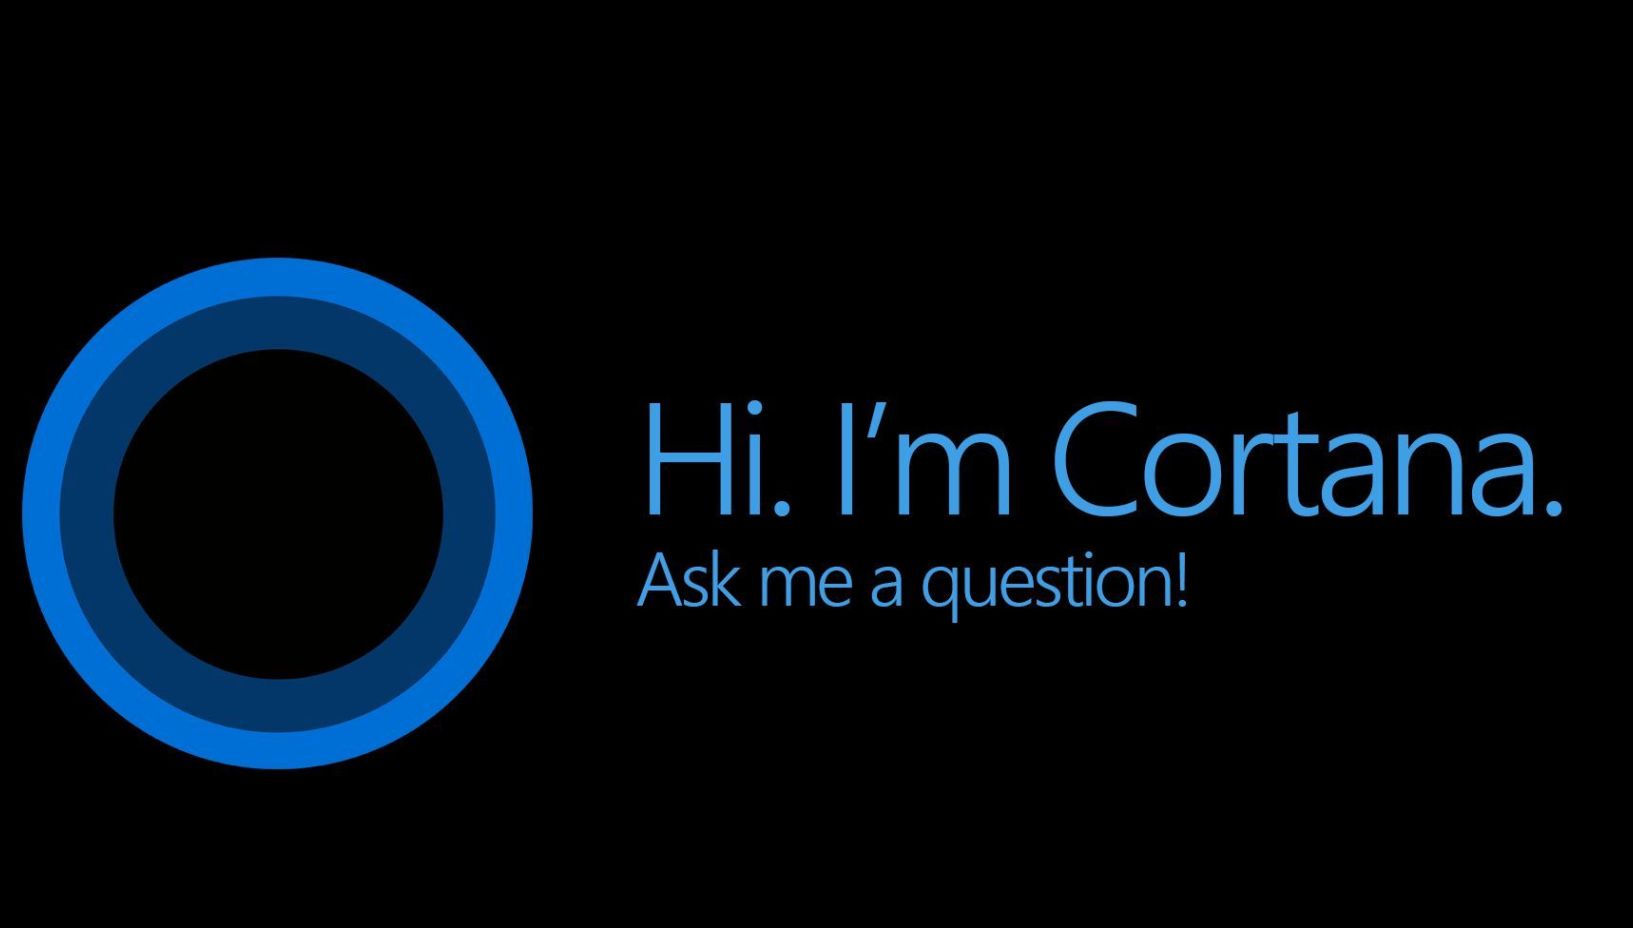 Esta imagem conceitual prevê a Cortana como uma assistente de produtividade pessoal